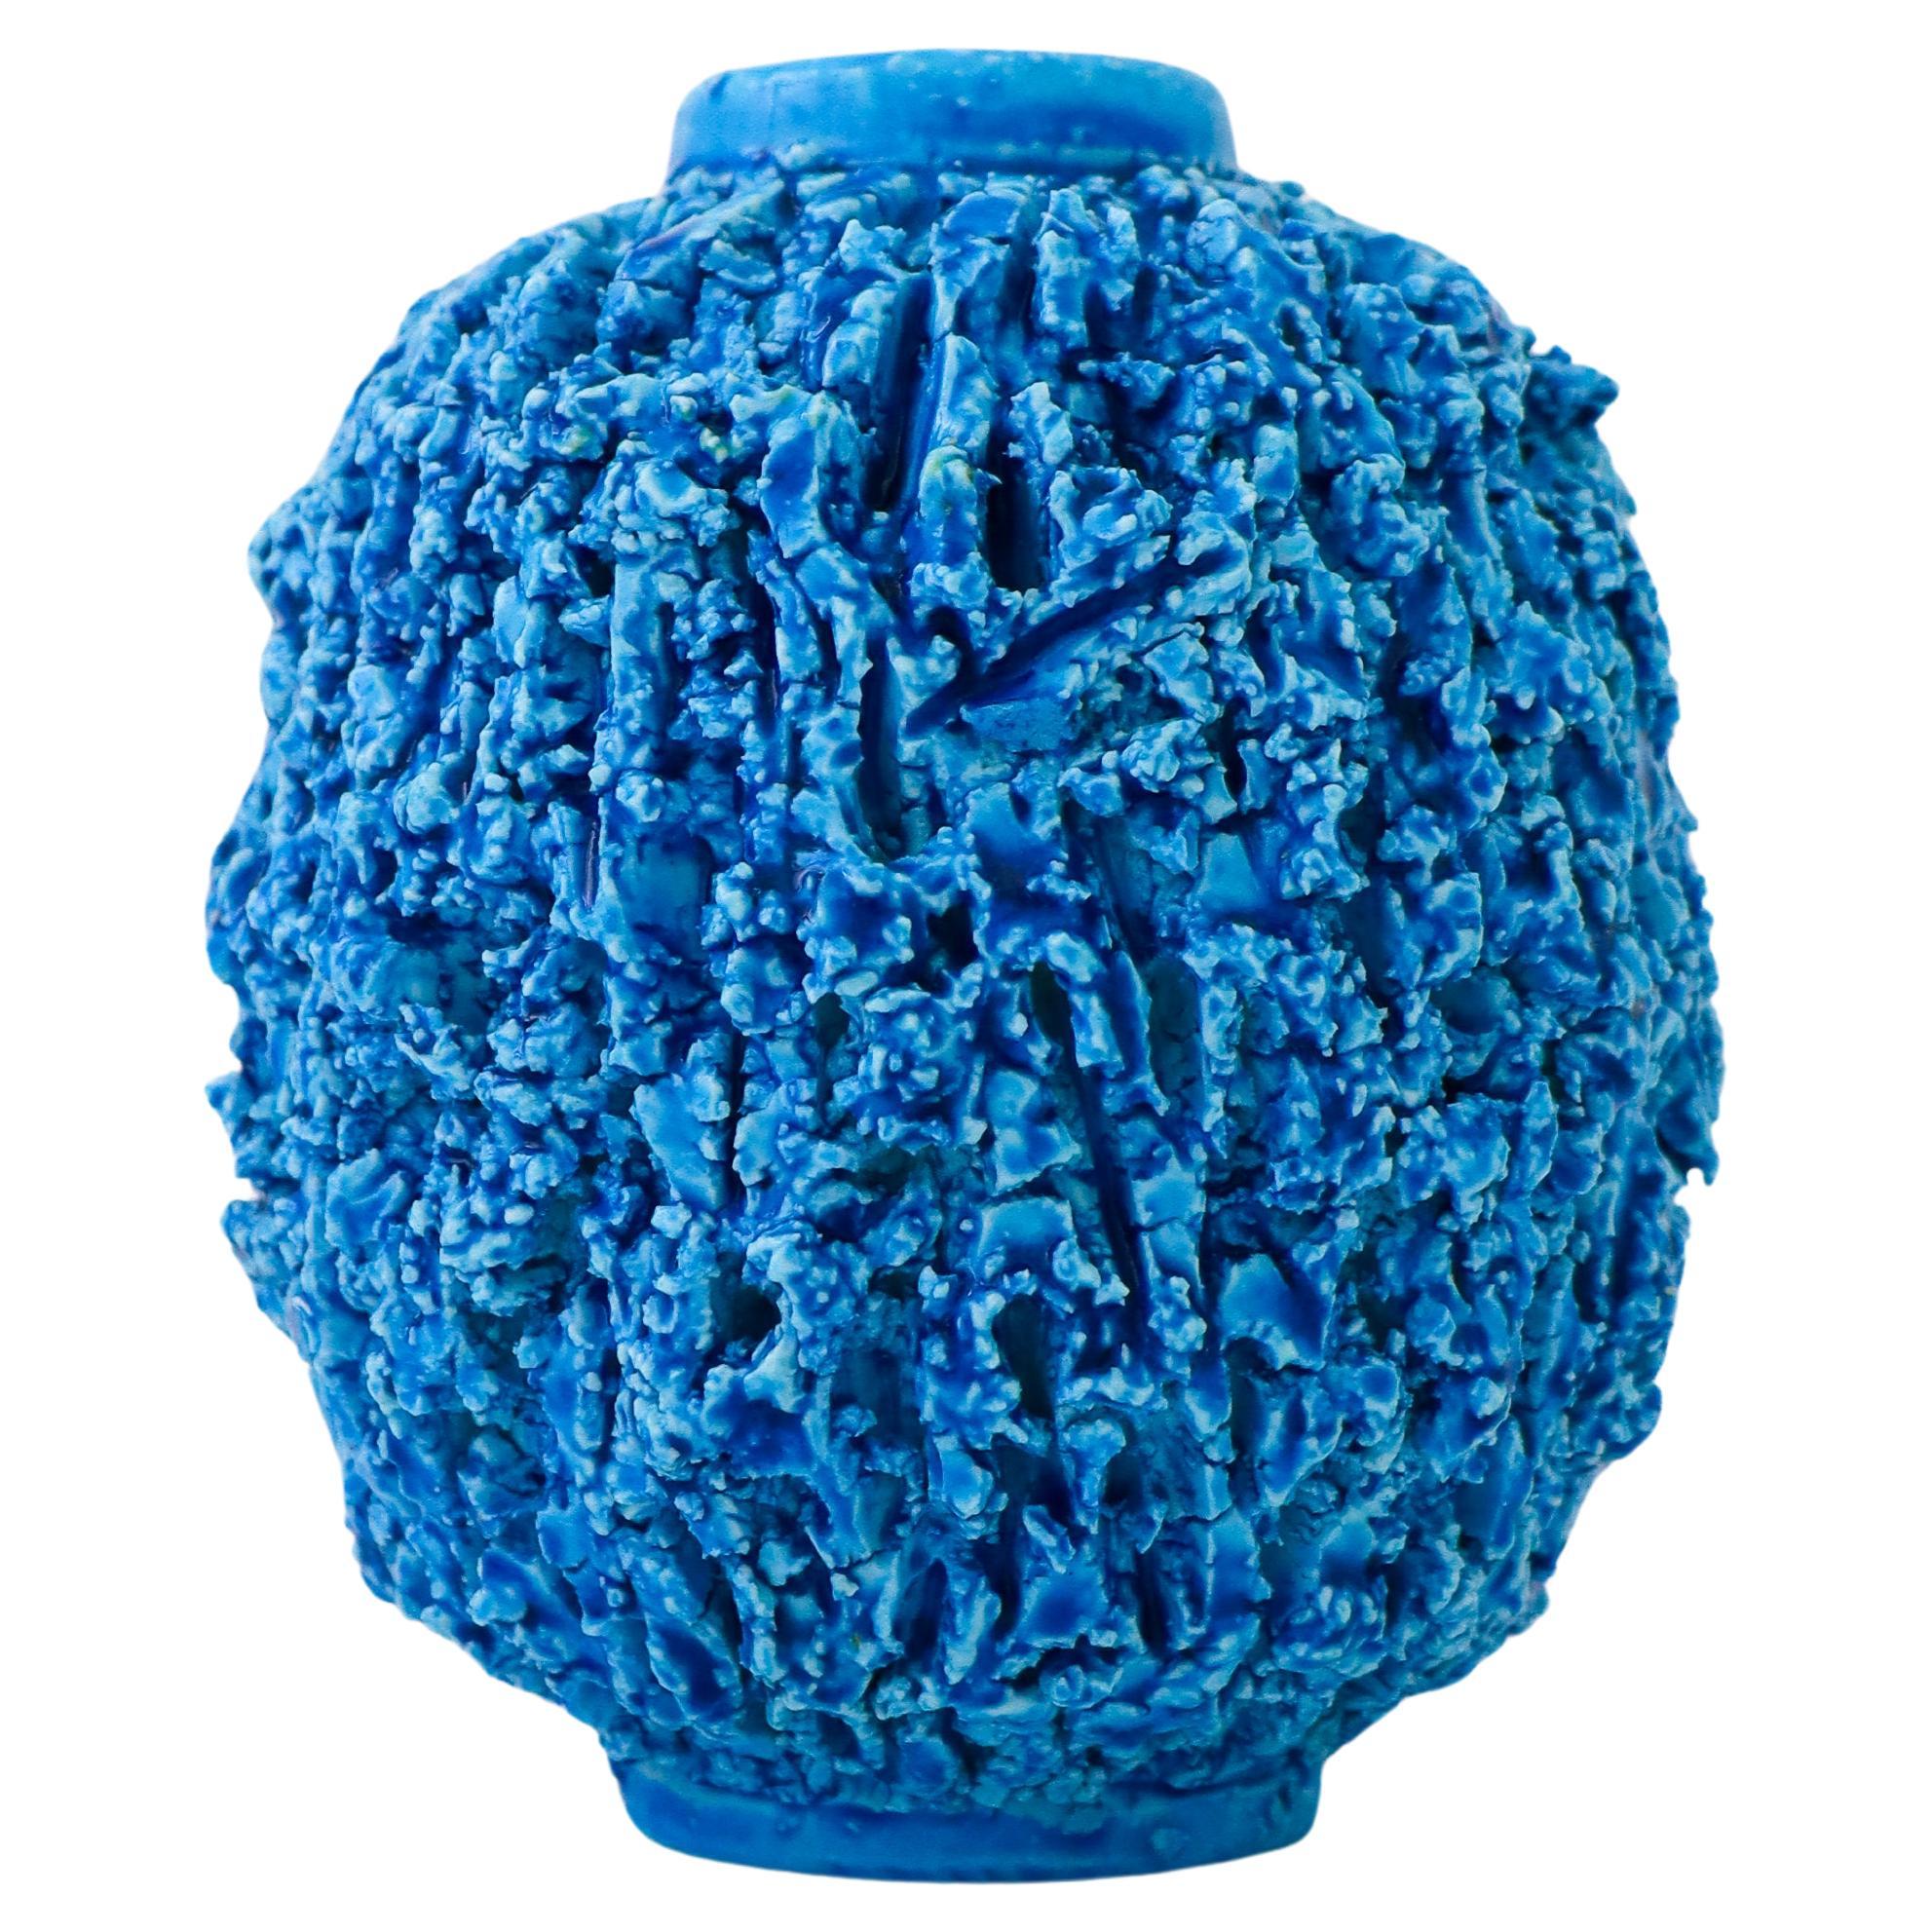 A Blue Hedgehog vase - Chamotte - Gunnar Nylund - Rörstrand